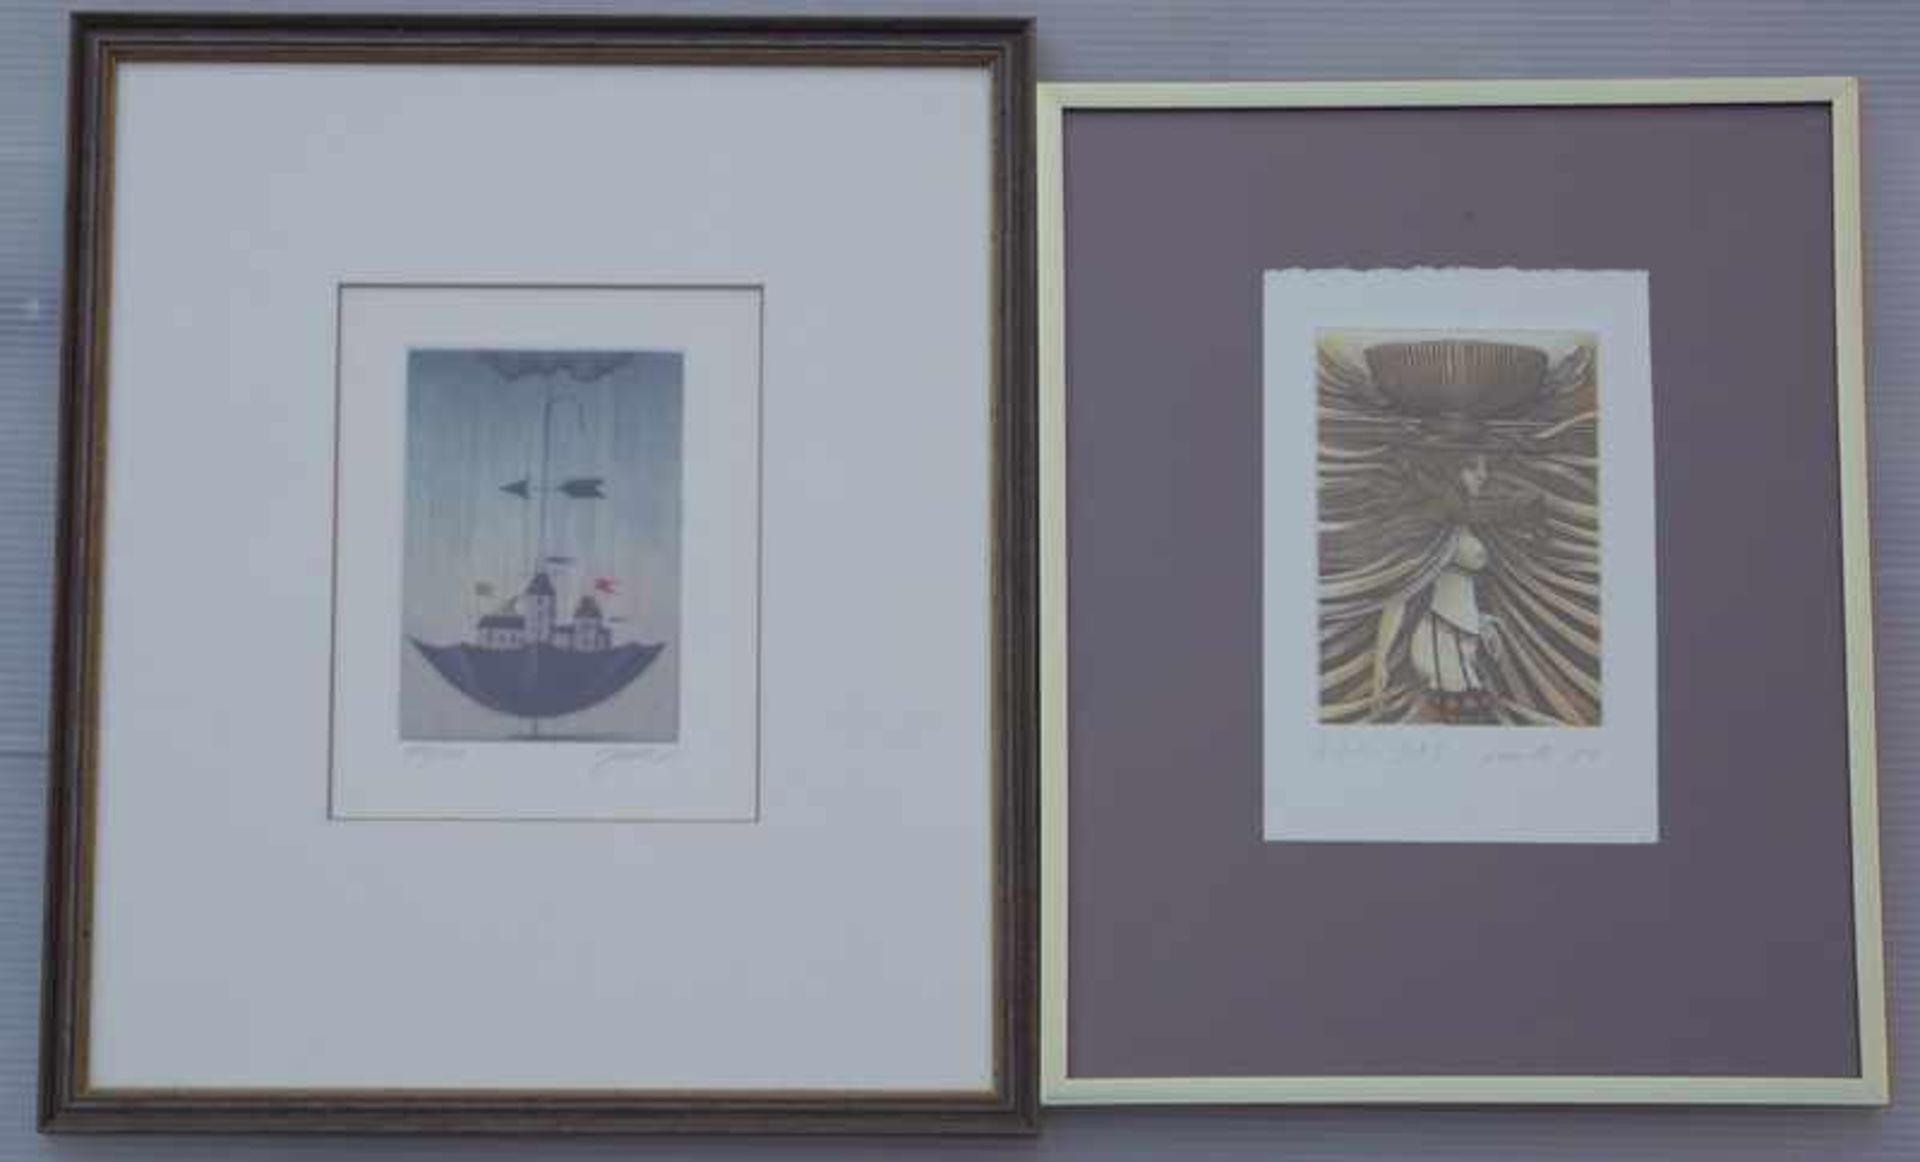 Alois Janak (*1924): Häuser in RegenschirmFarbradierung, Auflage 119/200, signiert unten rechts, - Image 2 of 2